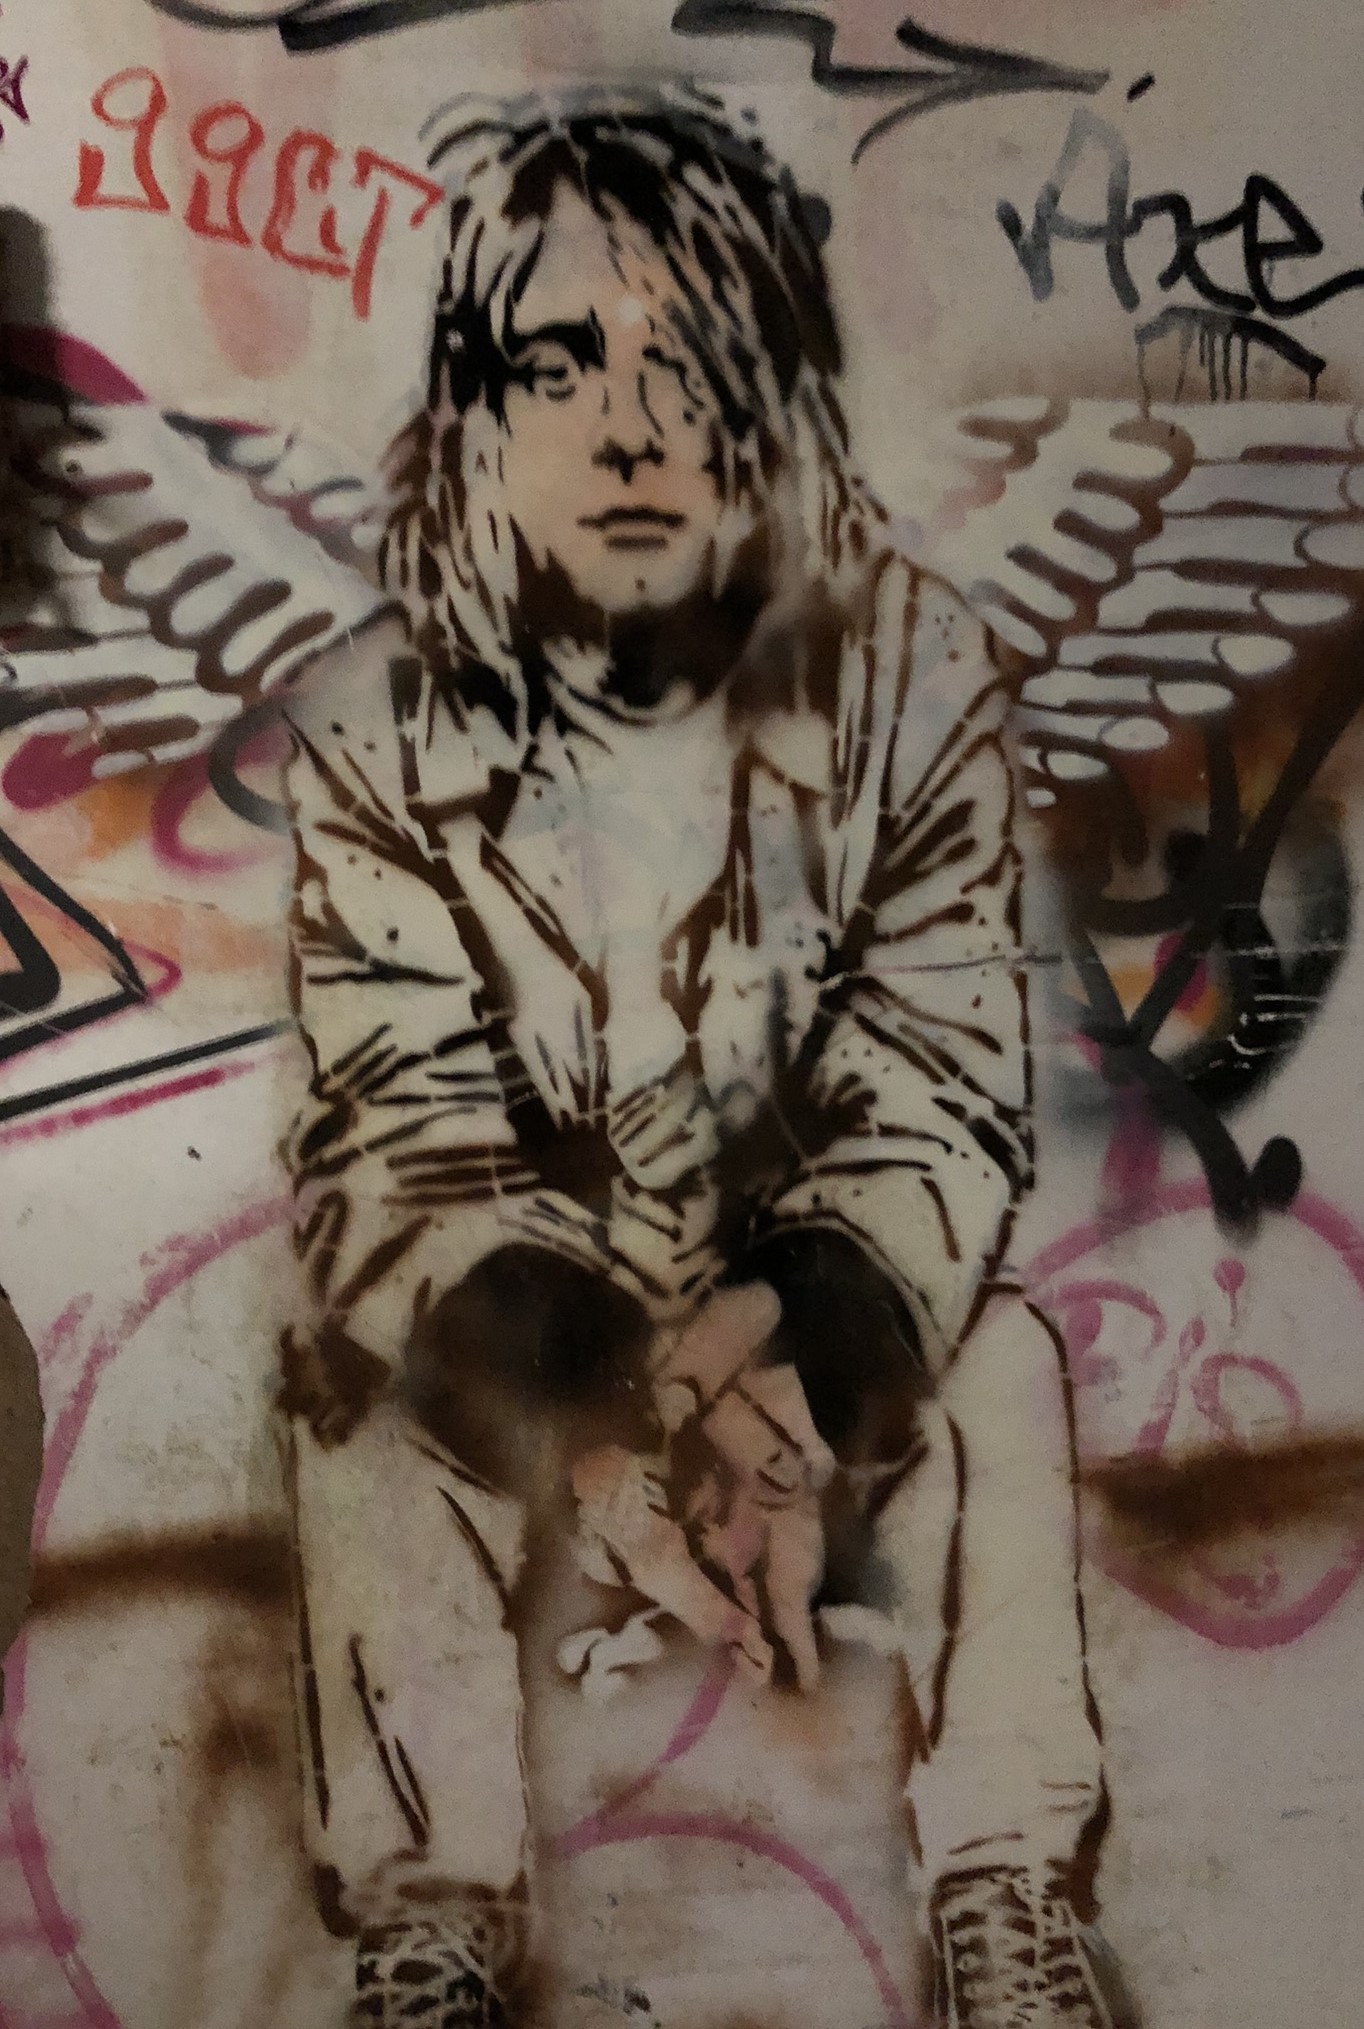 Graffiti „Kurt Cobain“ auf dem Gelände der Radarstation Teufelsberg in Berlin, unbekannter Künstler